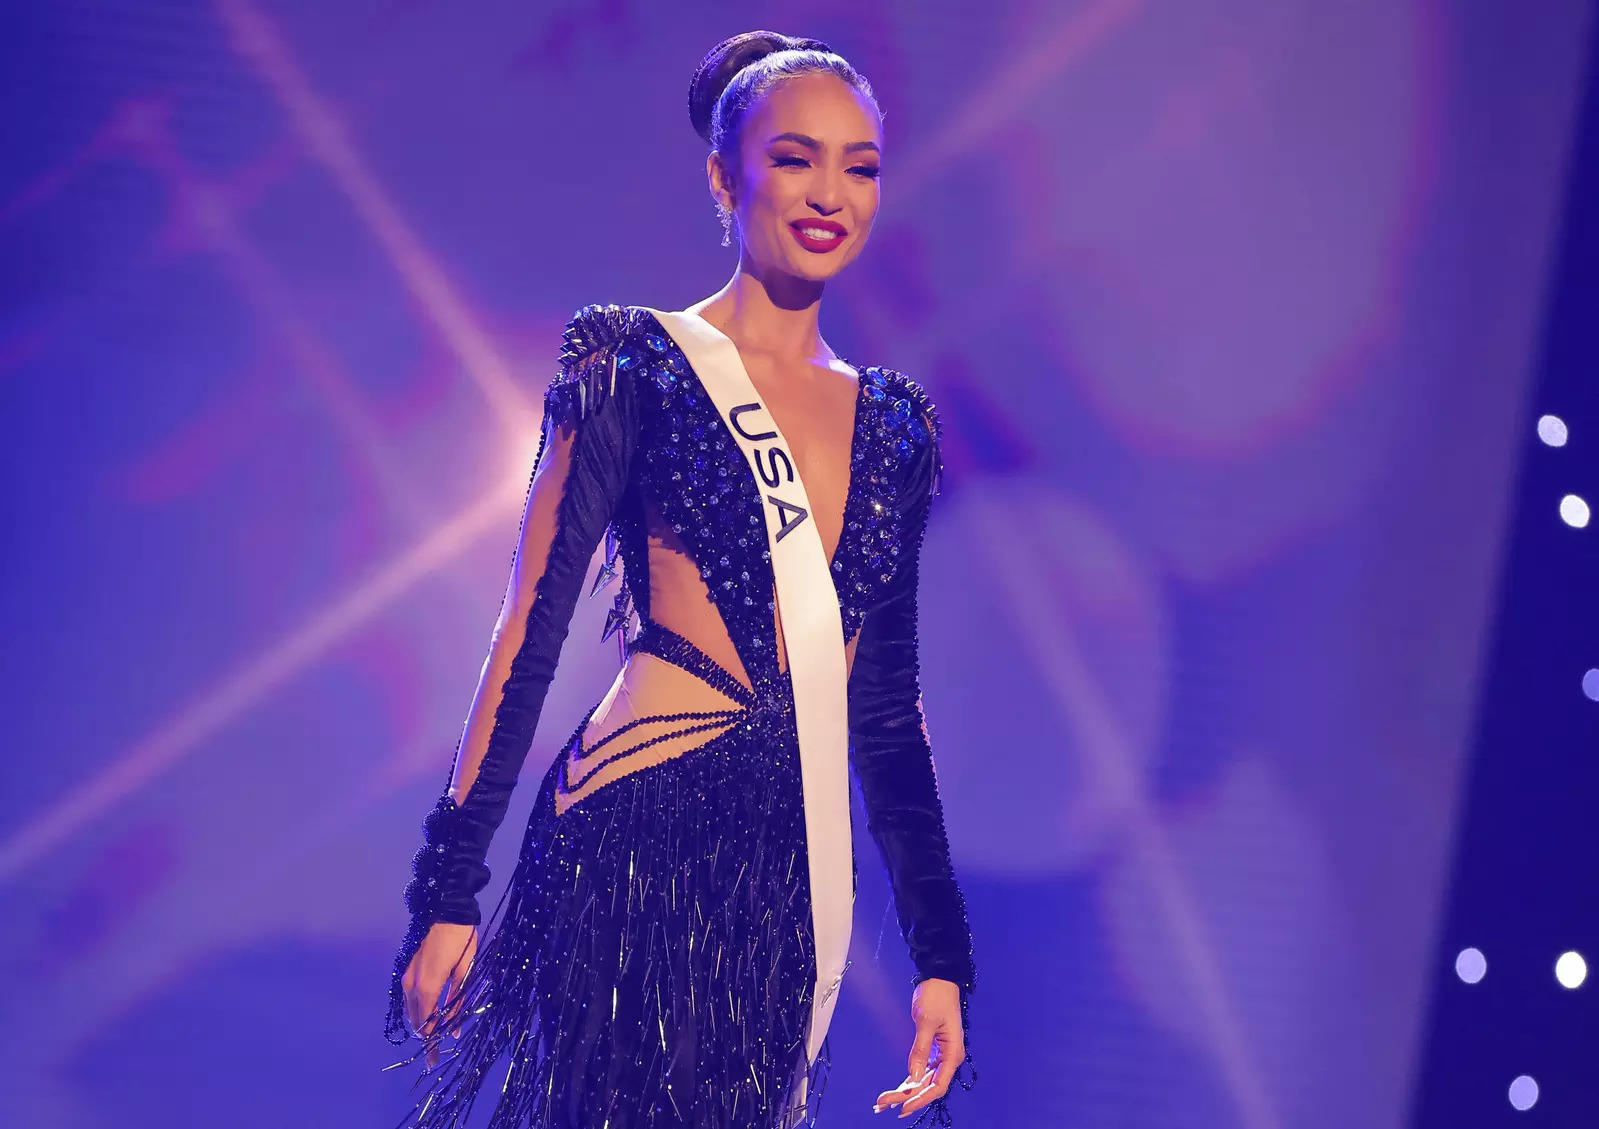 Who is Miss Universe 2022 winner R'Bonney Gabriel?